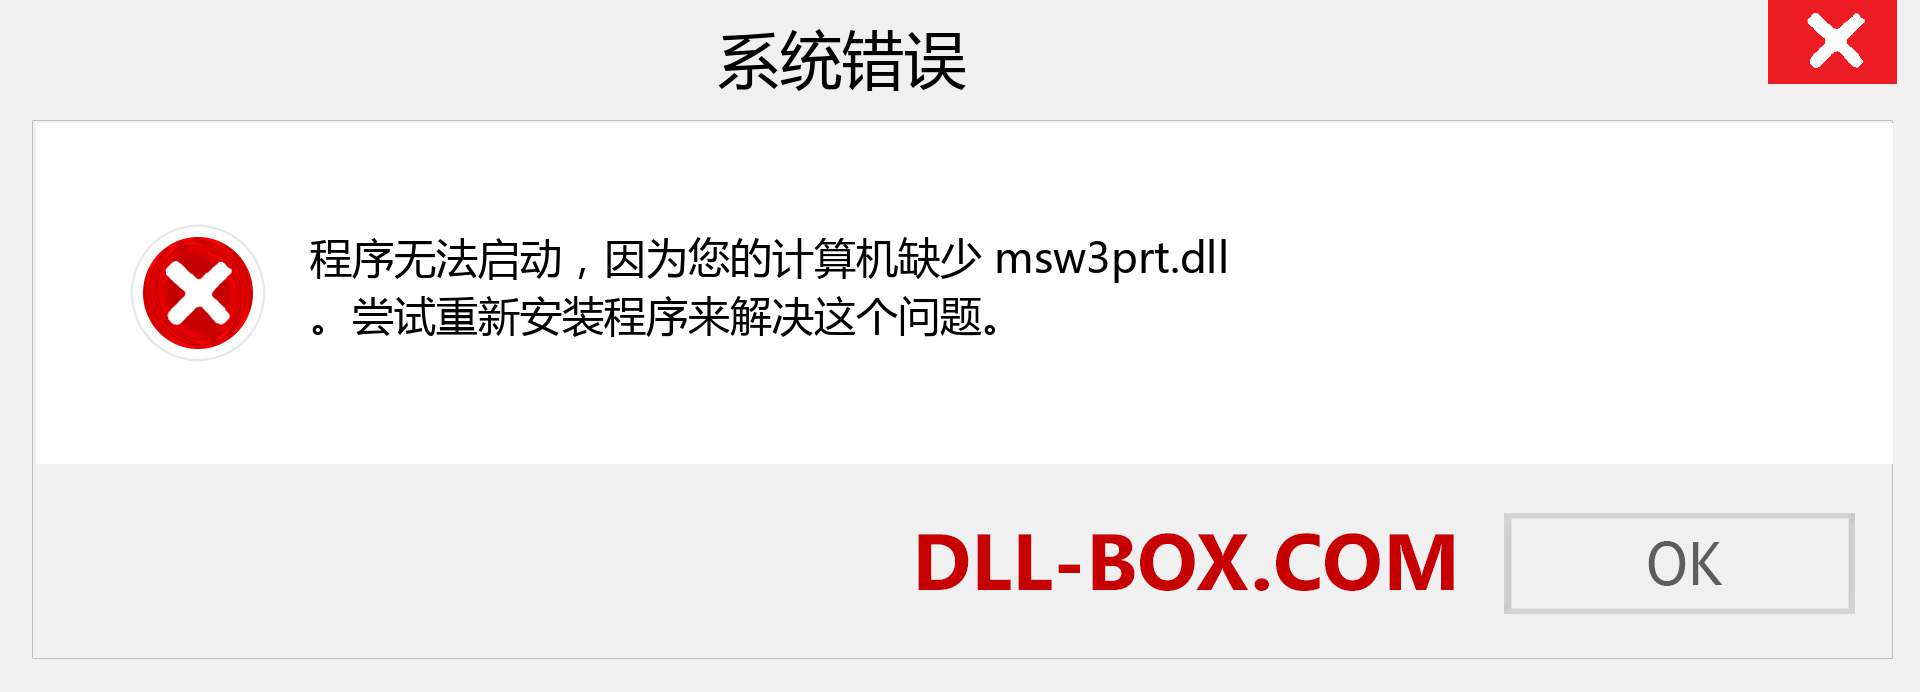 msw3prt.dll 文件丢失？。 适用于 Windows 7、8、10 的下载 - 修复 Windows、照片、图像上的 msw3prt dll 丢失错误